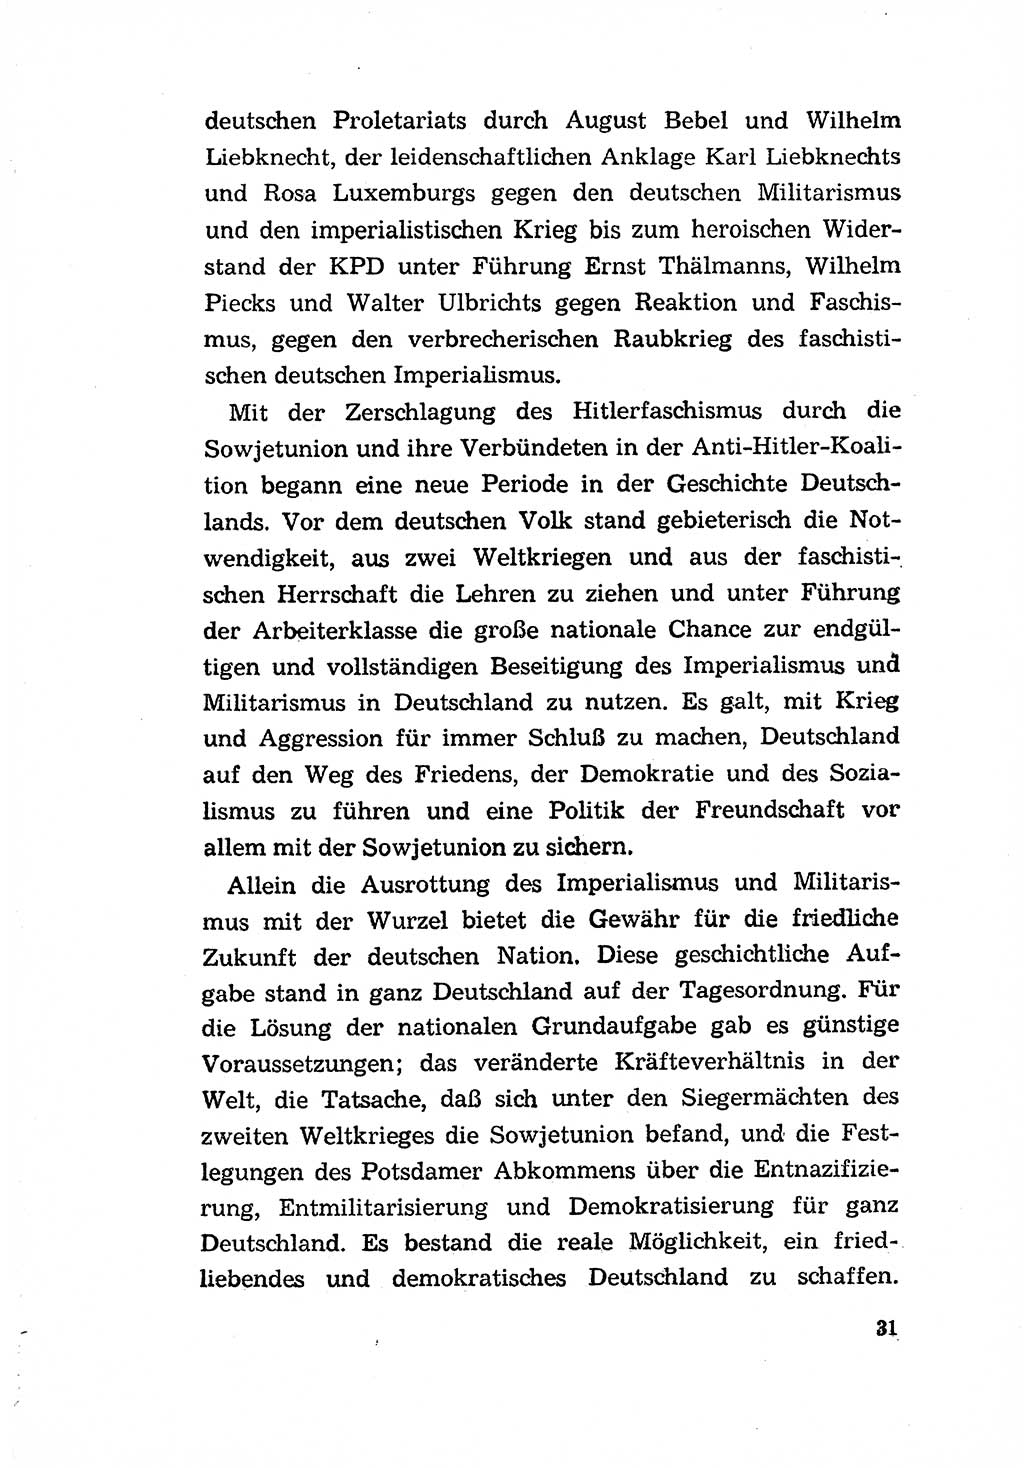 Programm der Sozialistischen Einheitspartei Deutschlands (SED) [Deutsche Demokratische Republik (DDR)] 1963, Seite 31 (Progr. SED DDR 1963, S. 31)